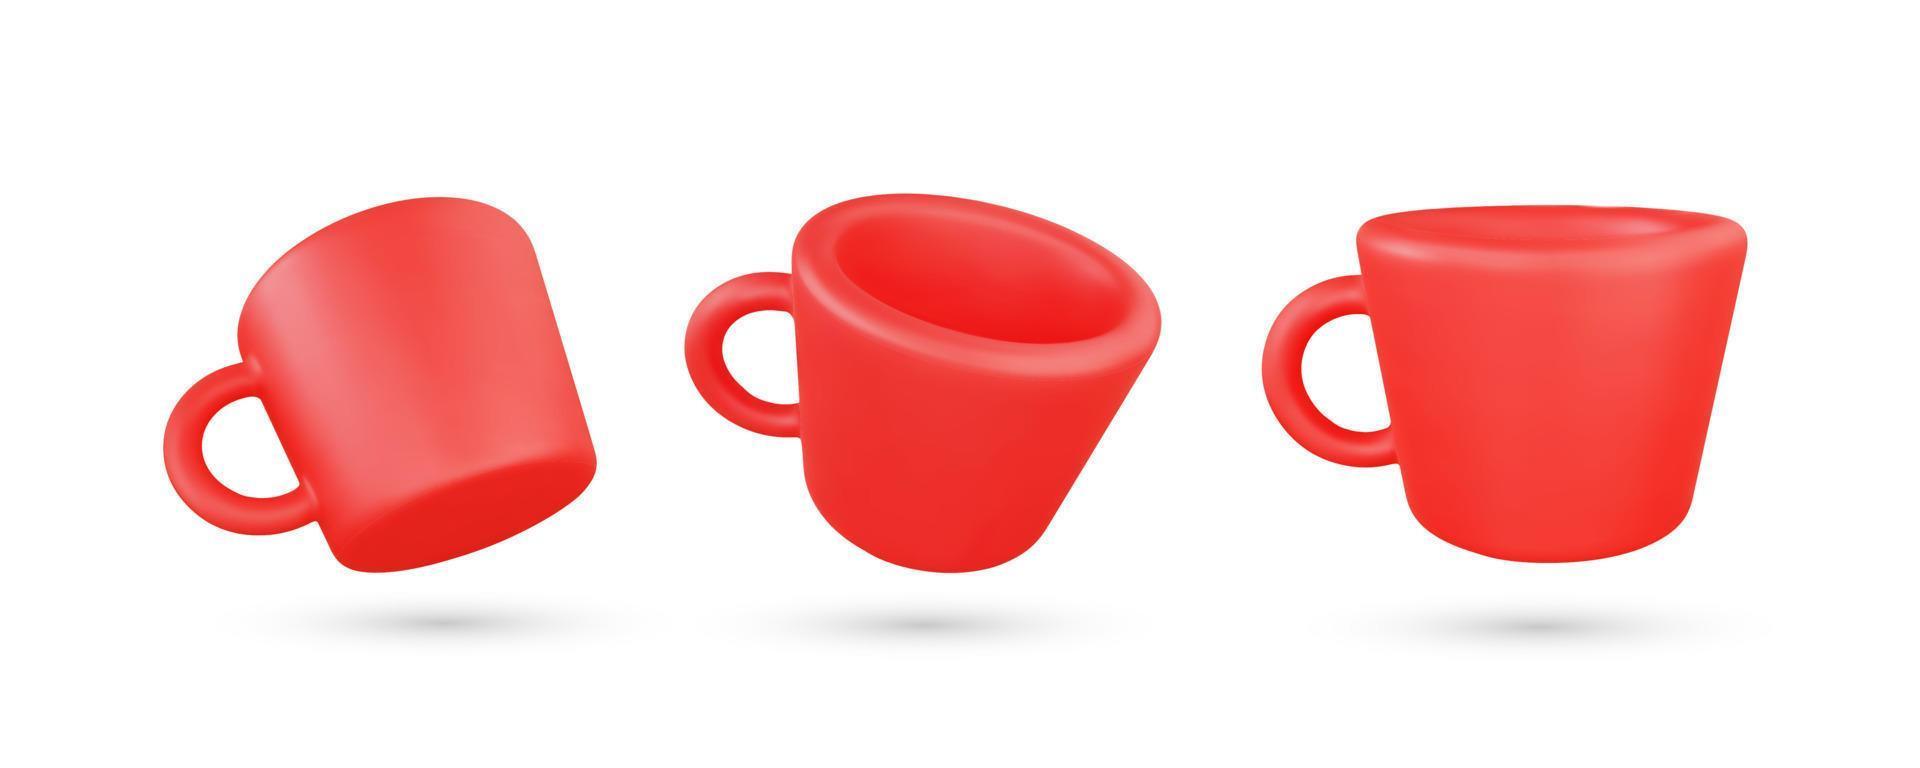 ilustração vetorial de xícara de café vermelho 3d realista vetor